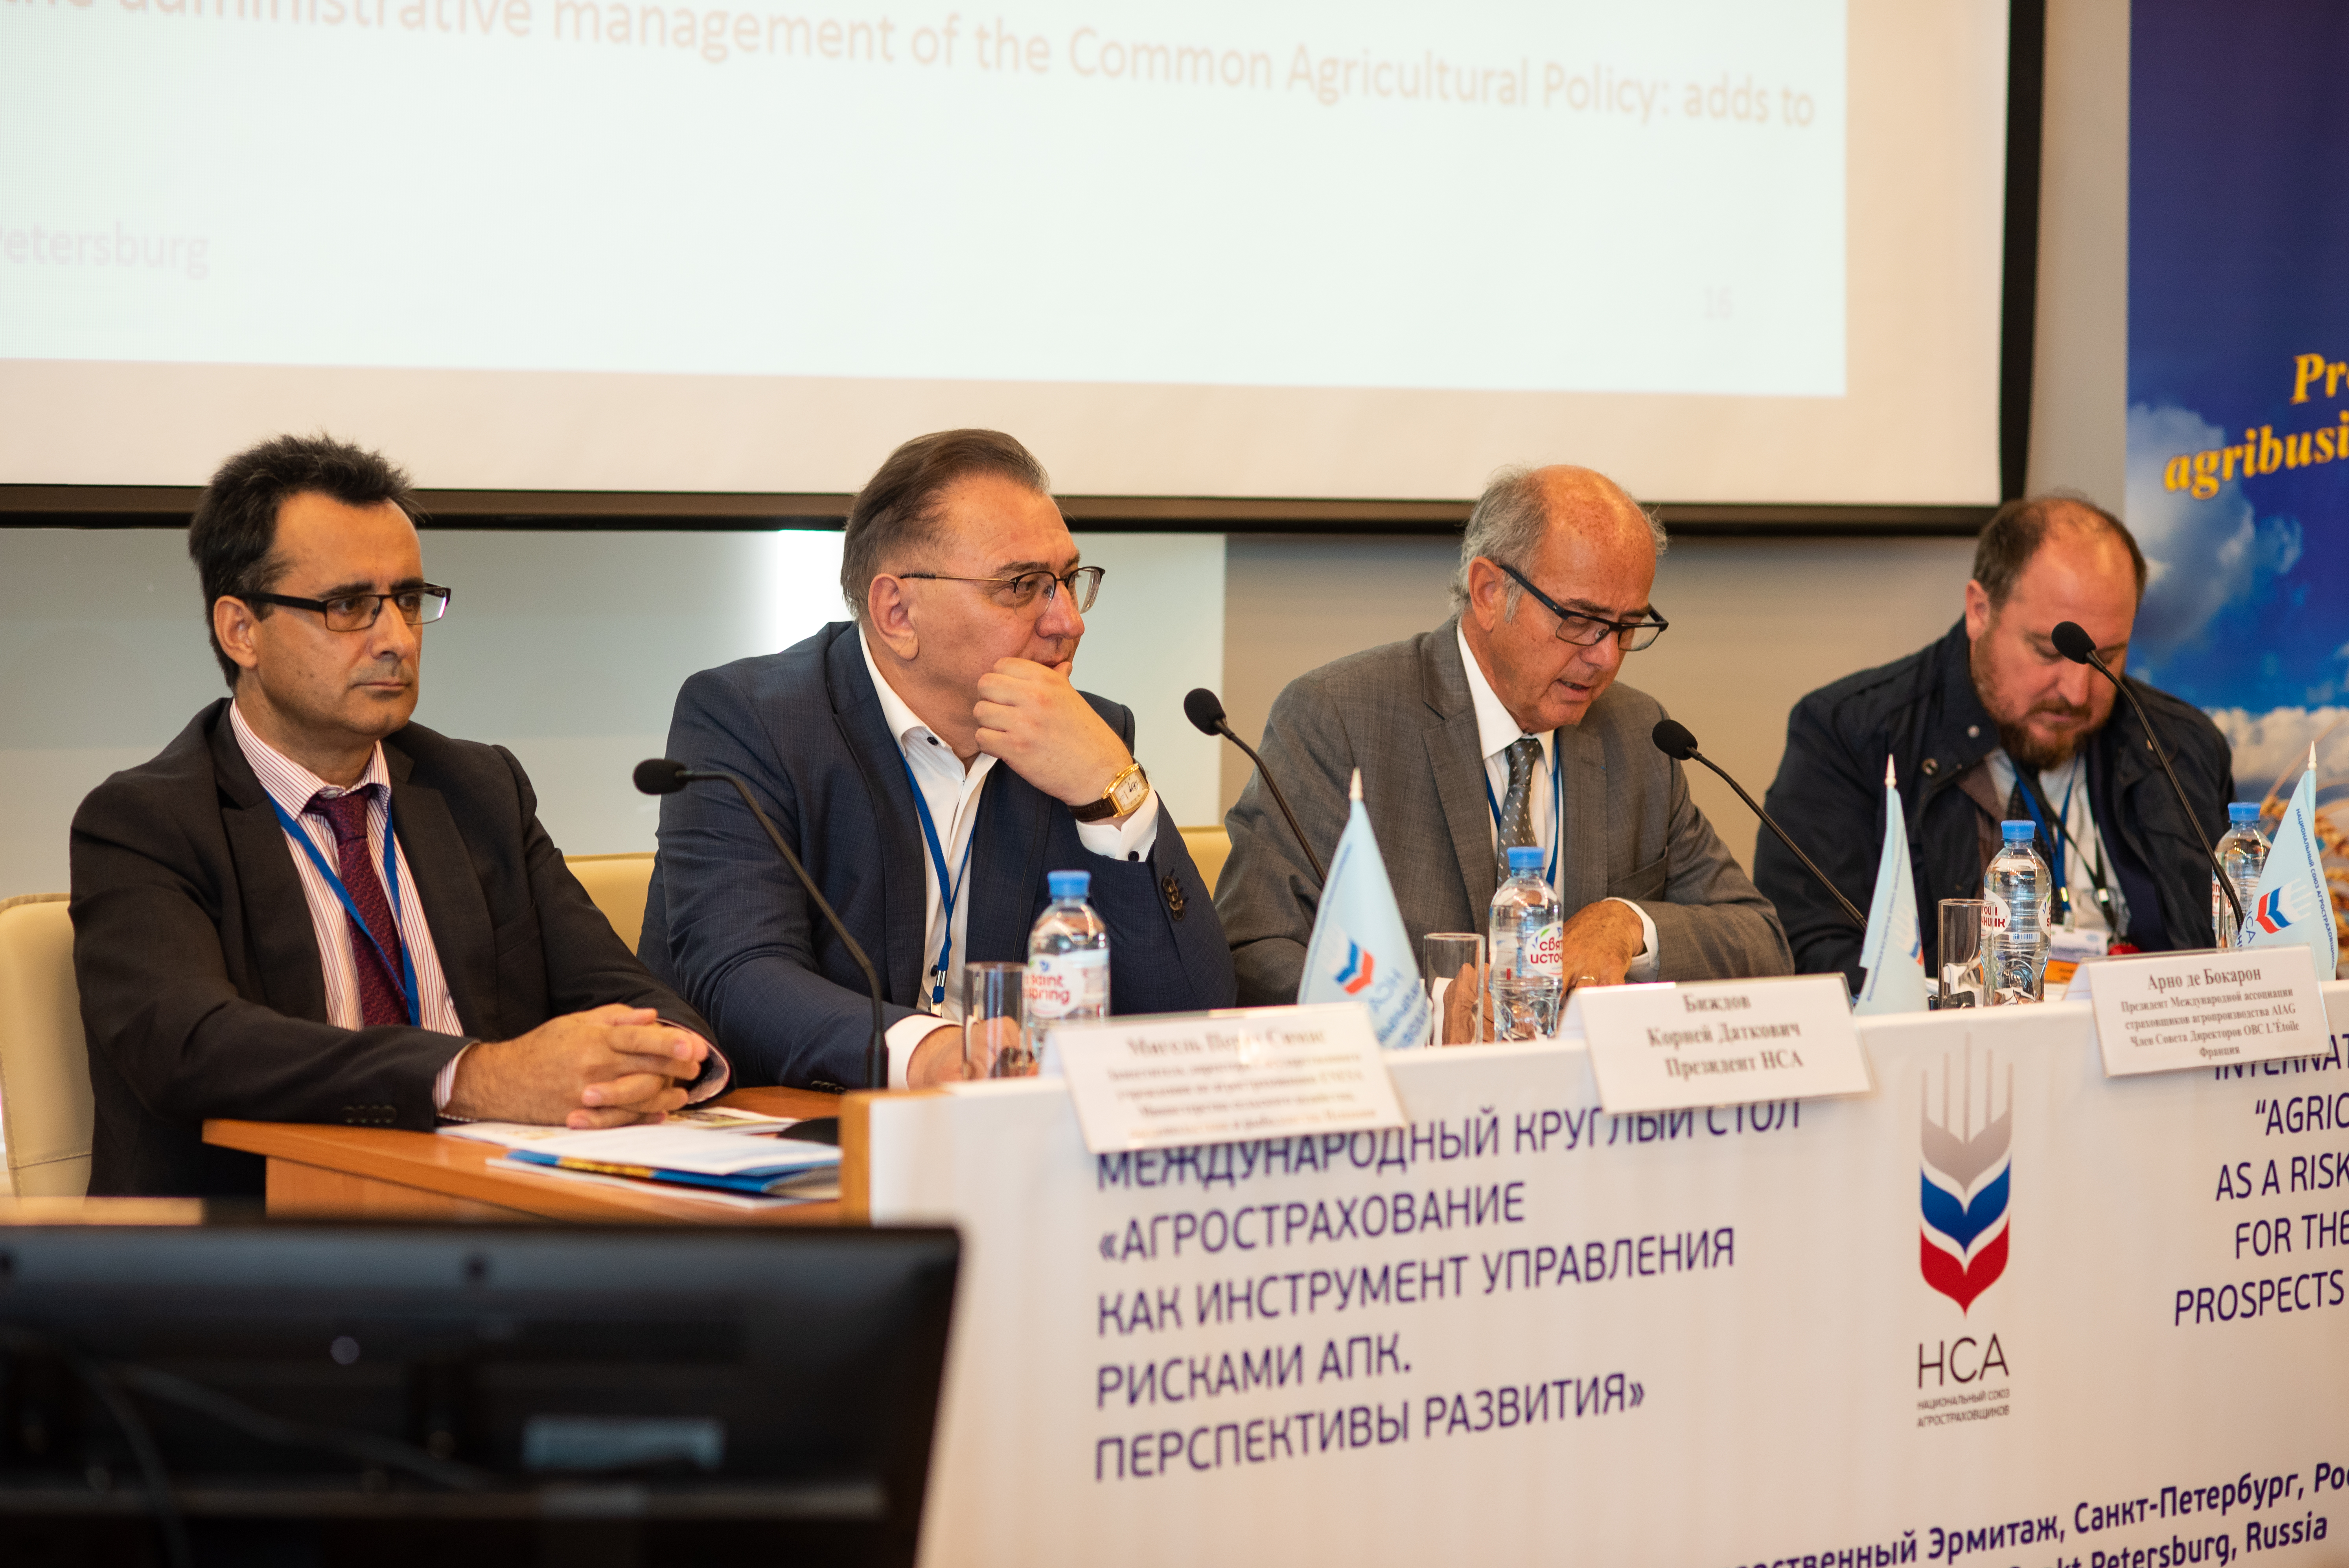 НСА: Президент AIAG Арно де Бокарон представил в Санкт-Петербурге опыт европейских стран по развитию агрострахования